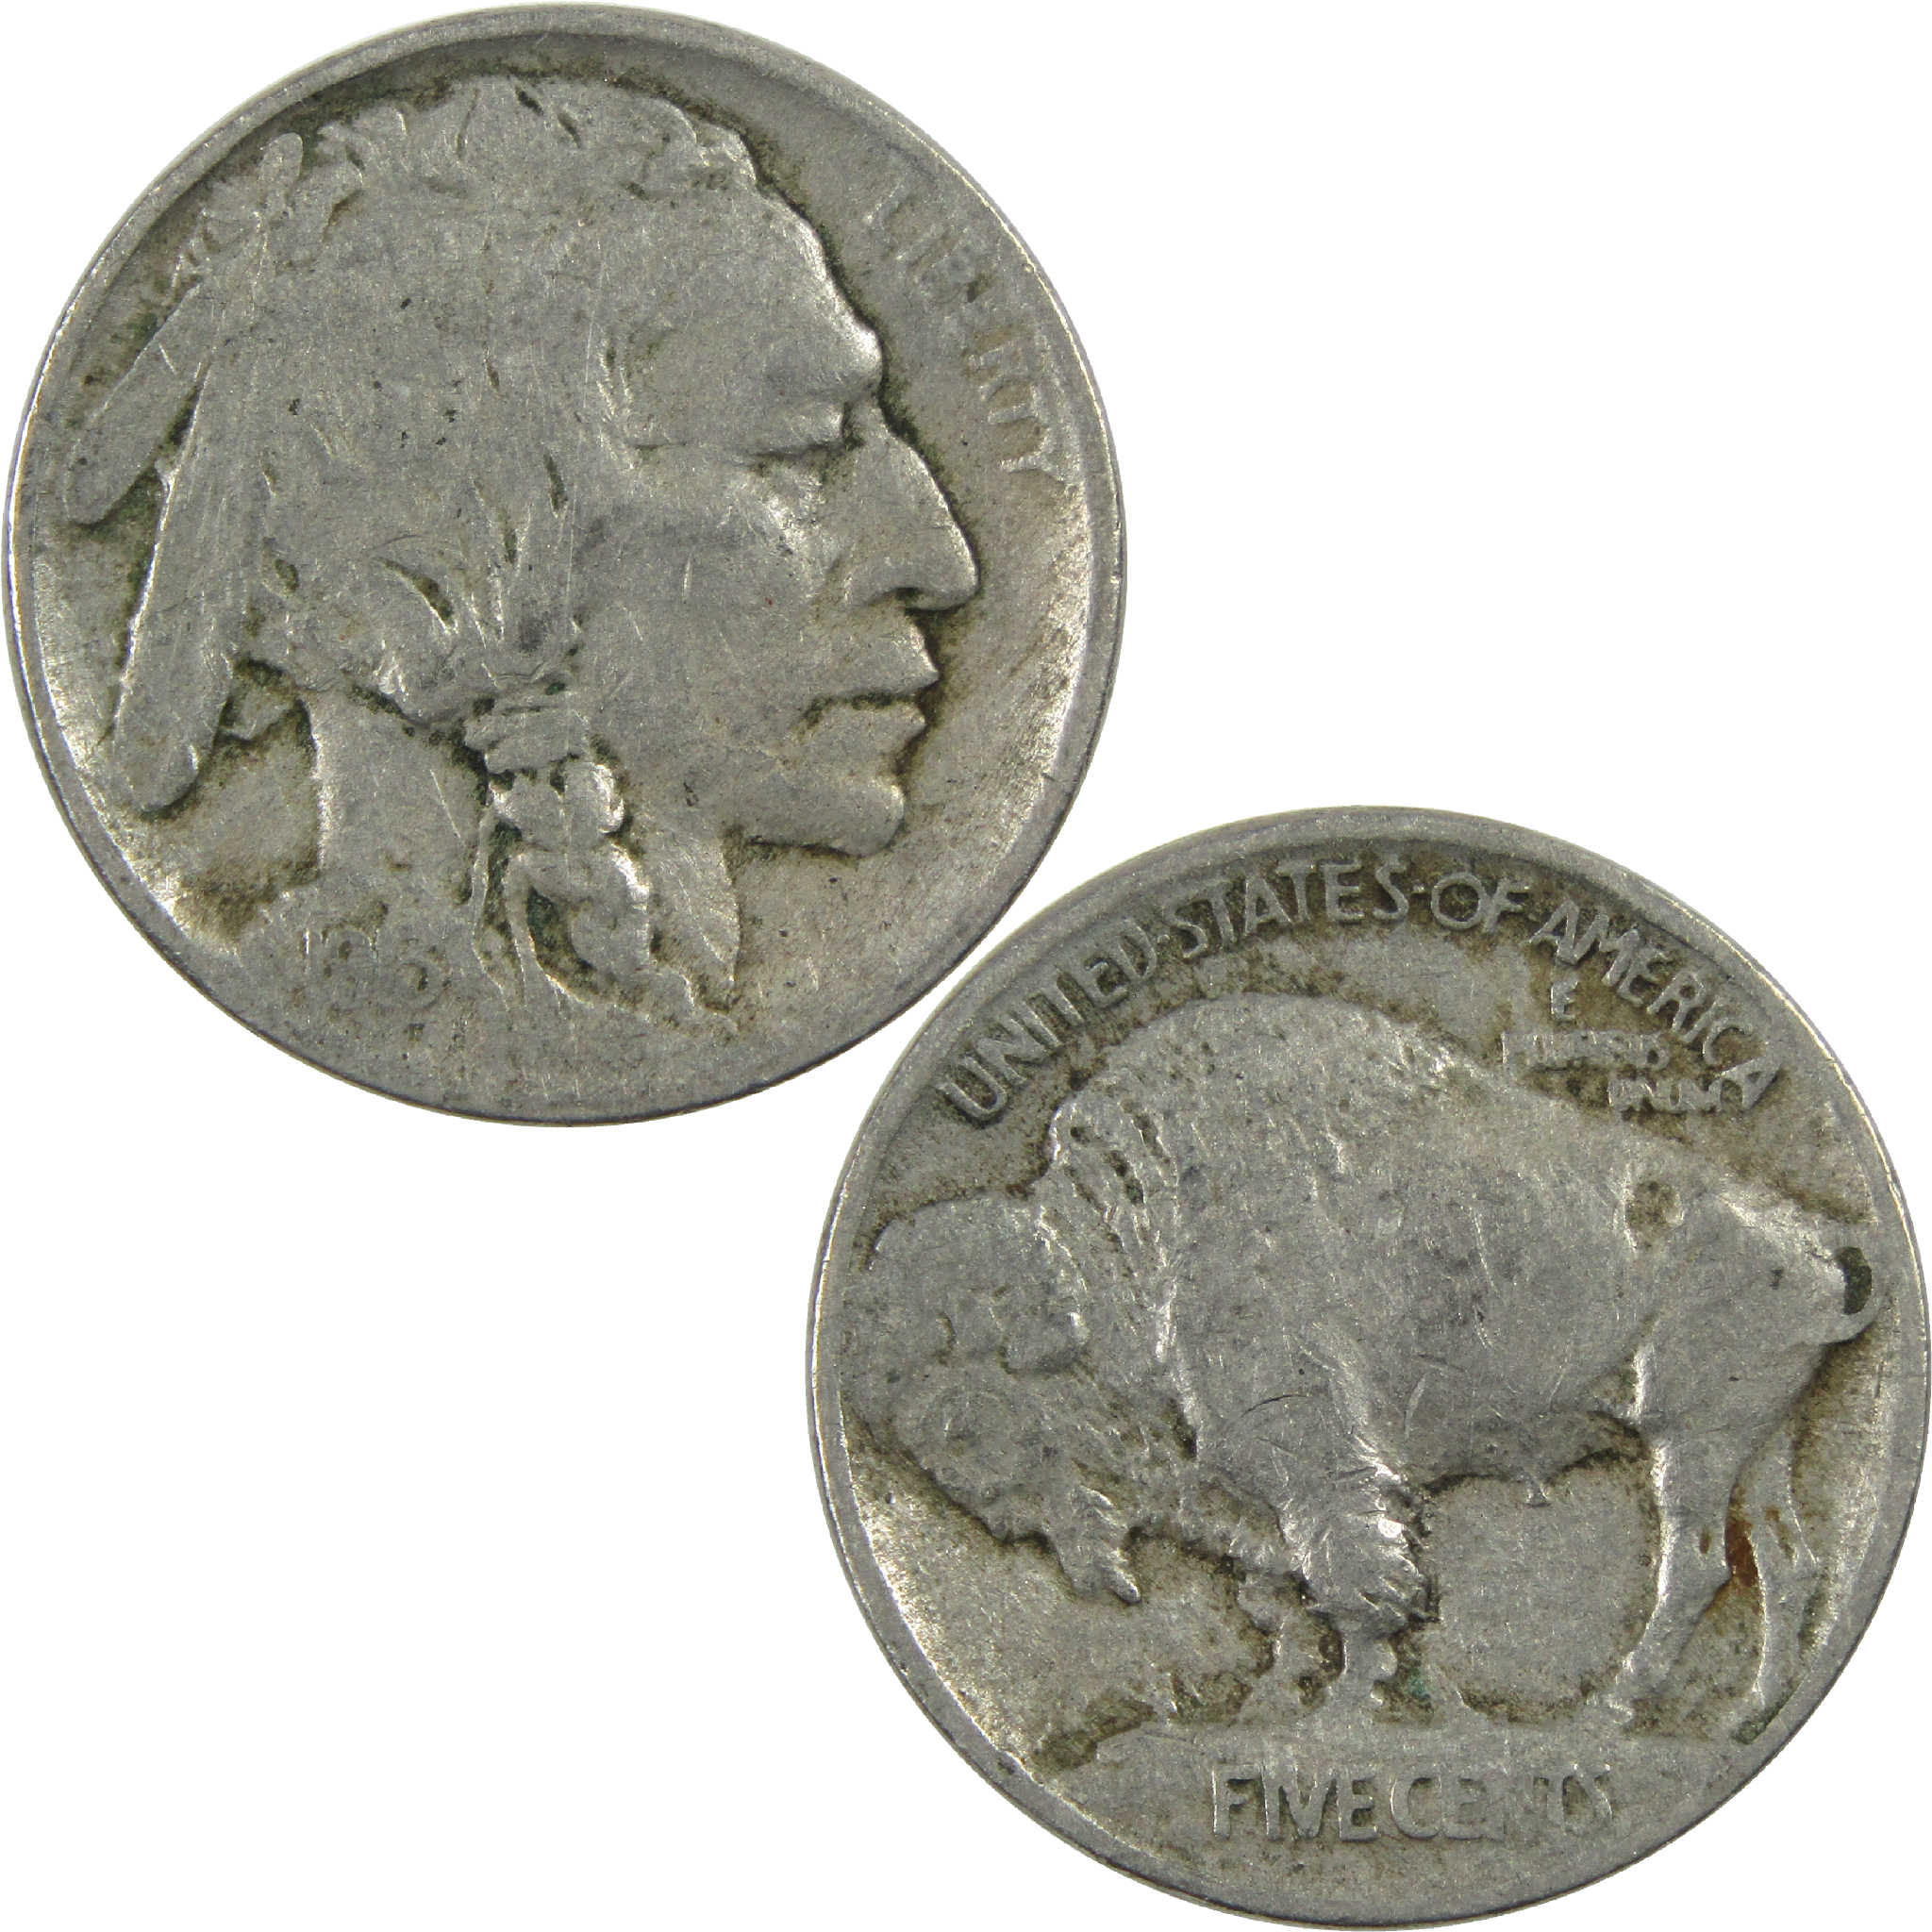 1913 Type 1 Indian Head Buffalo Nickel F Fine 5c Coin SKU:I12599